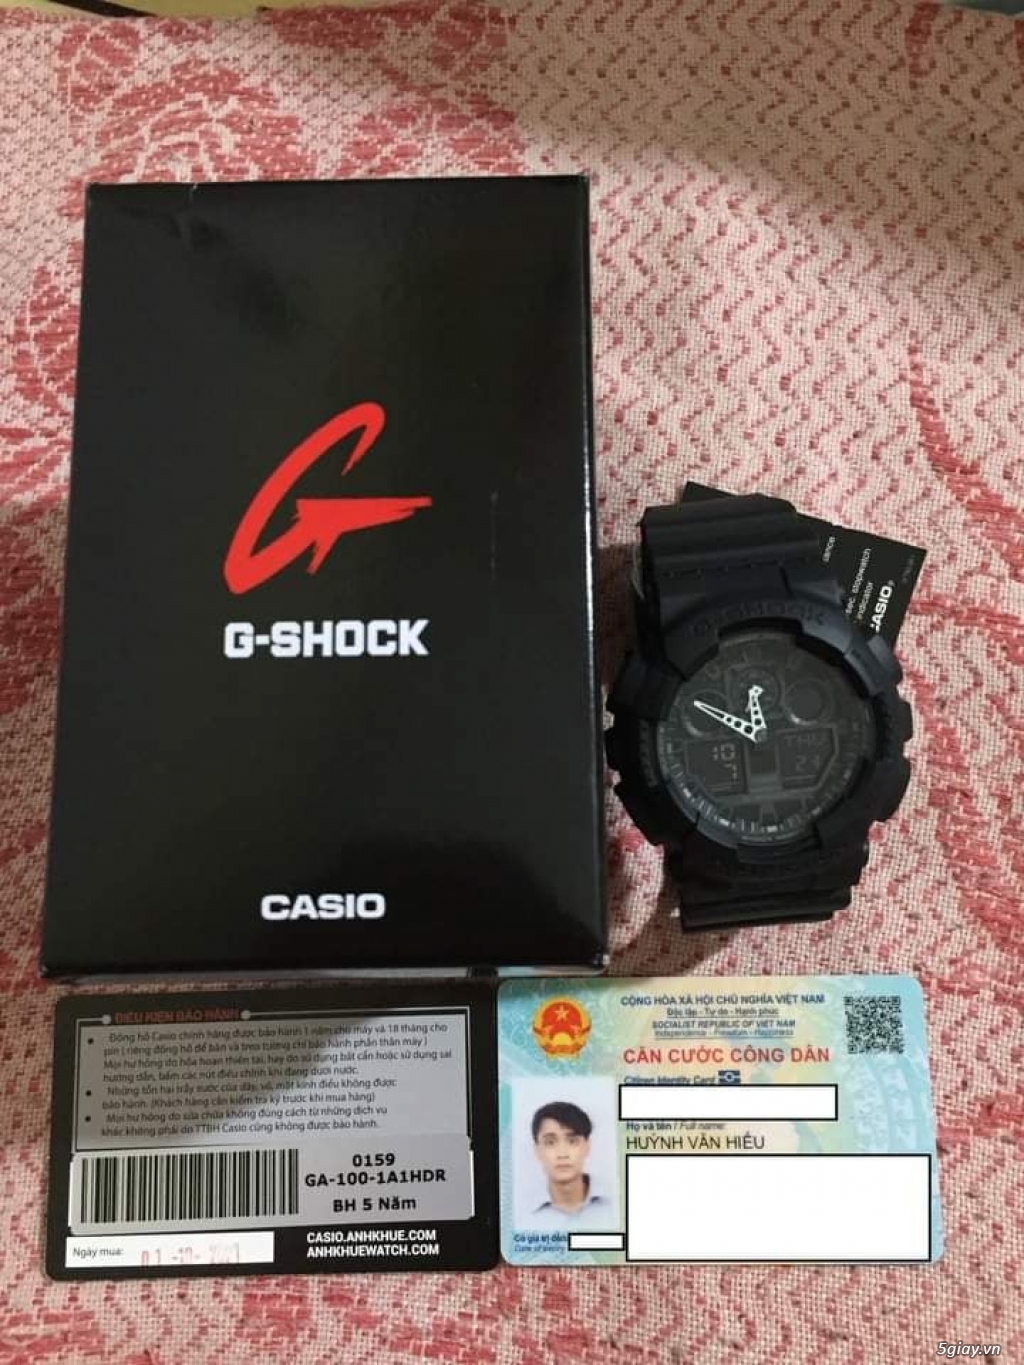 Đồng hồ G-Shock GA-100-1A1HDR - CHÍNH HÃNG - BH 5 NĂM (MỚI)